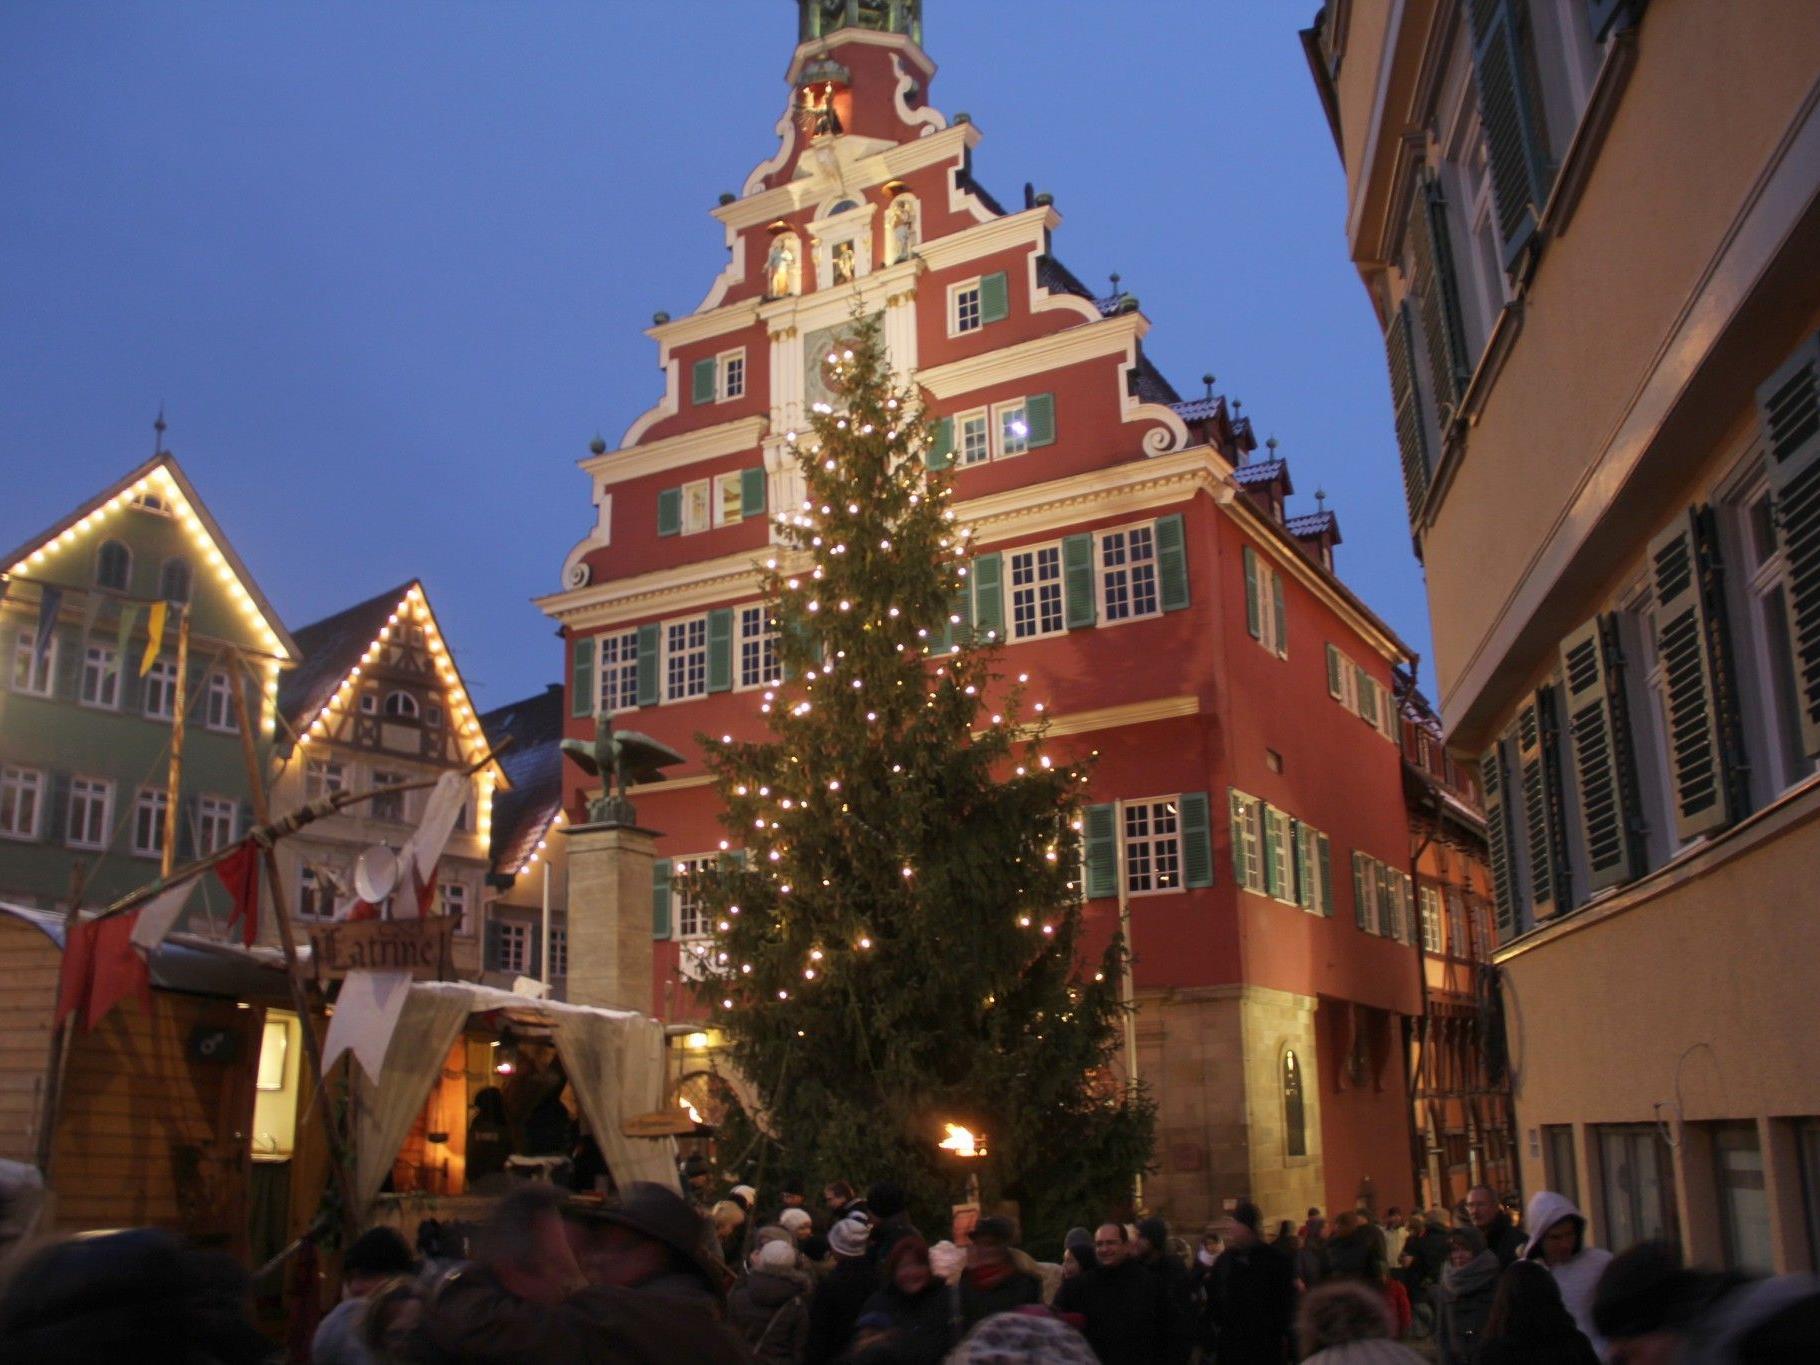 Höhepunkt der Adventreise war der Besuch des Weihnachtsmarktes in der Altstadt von Esslingen